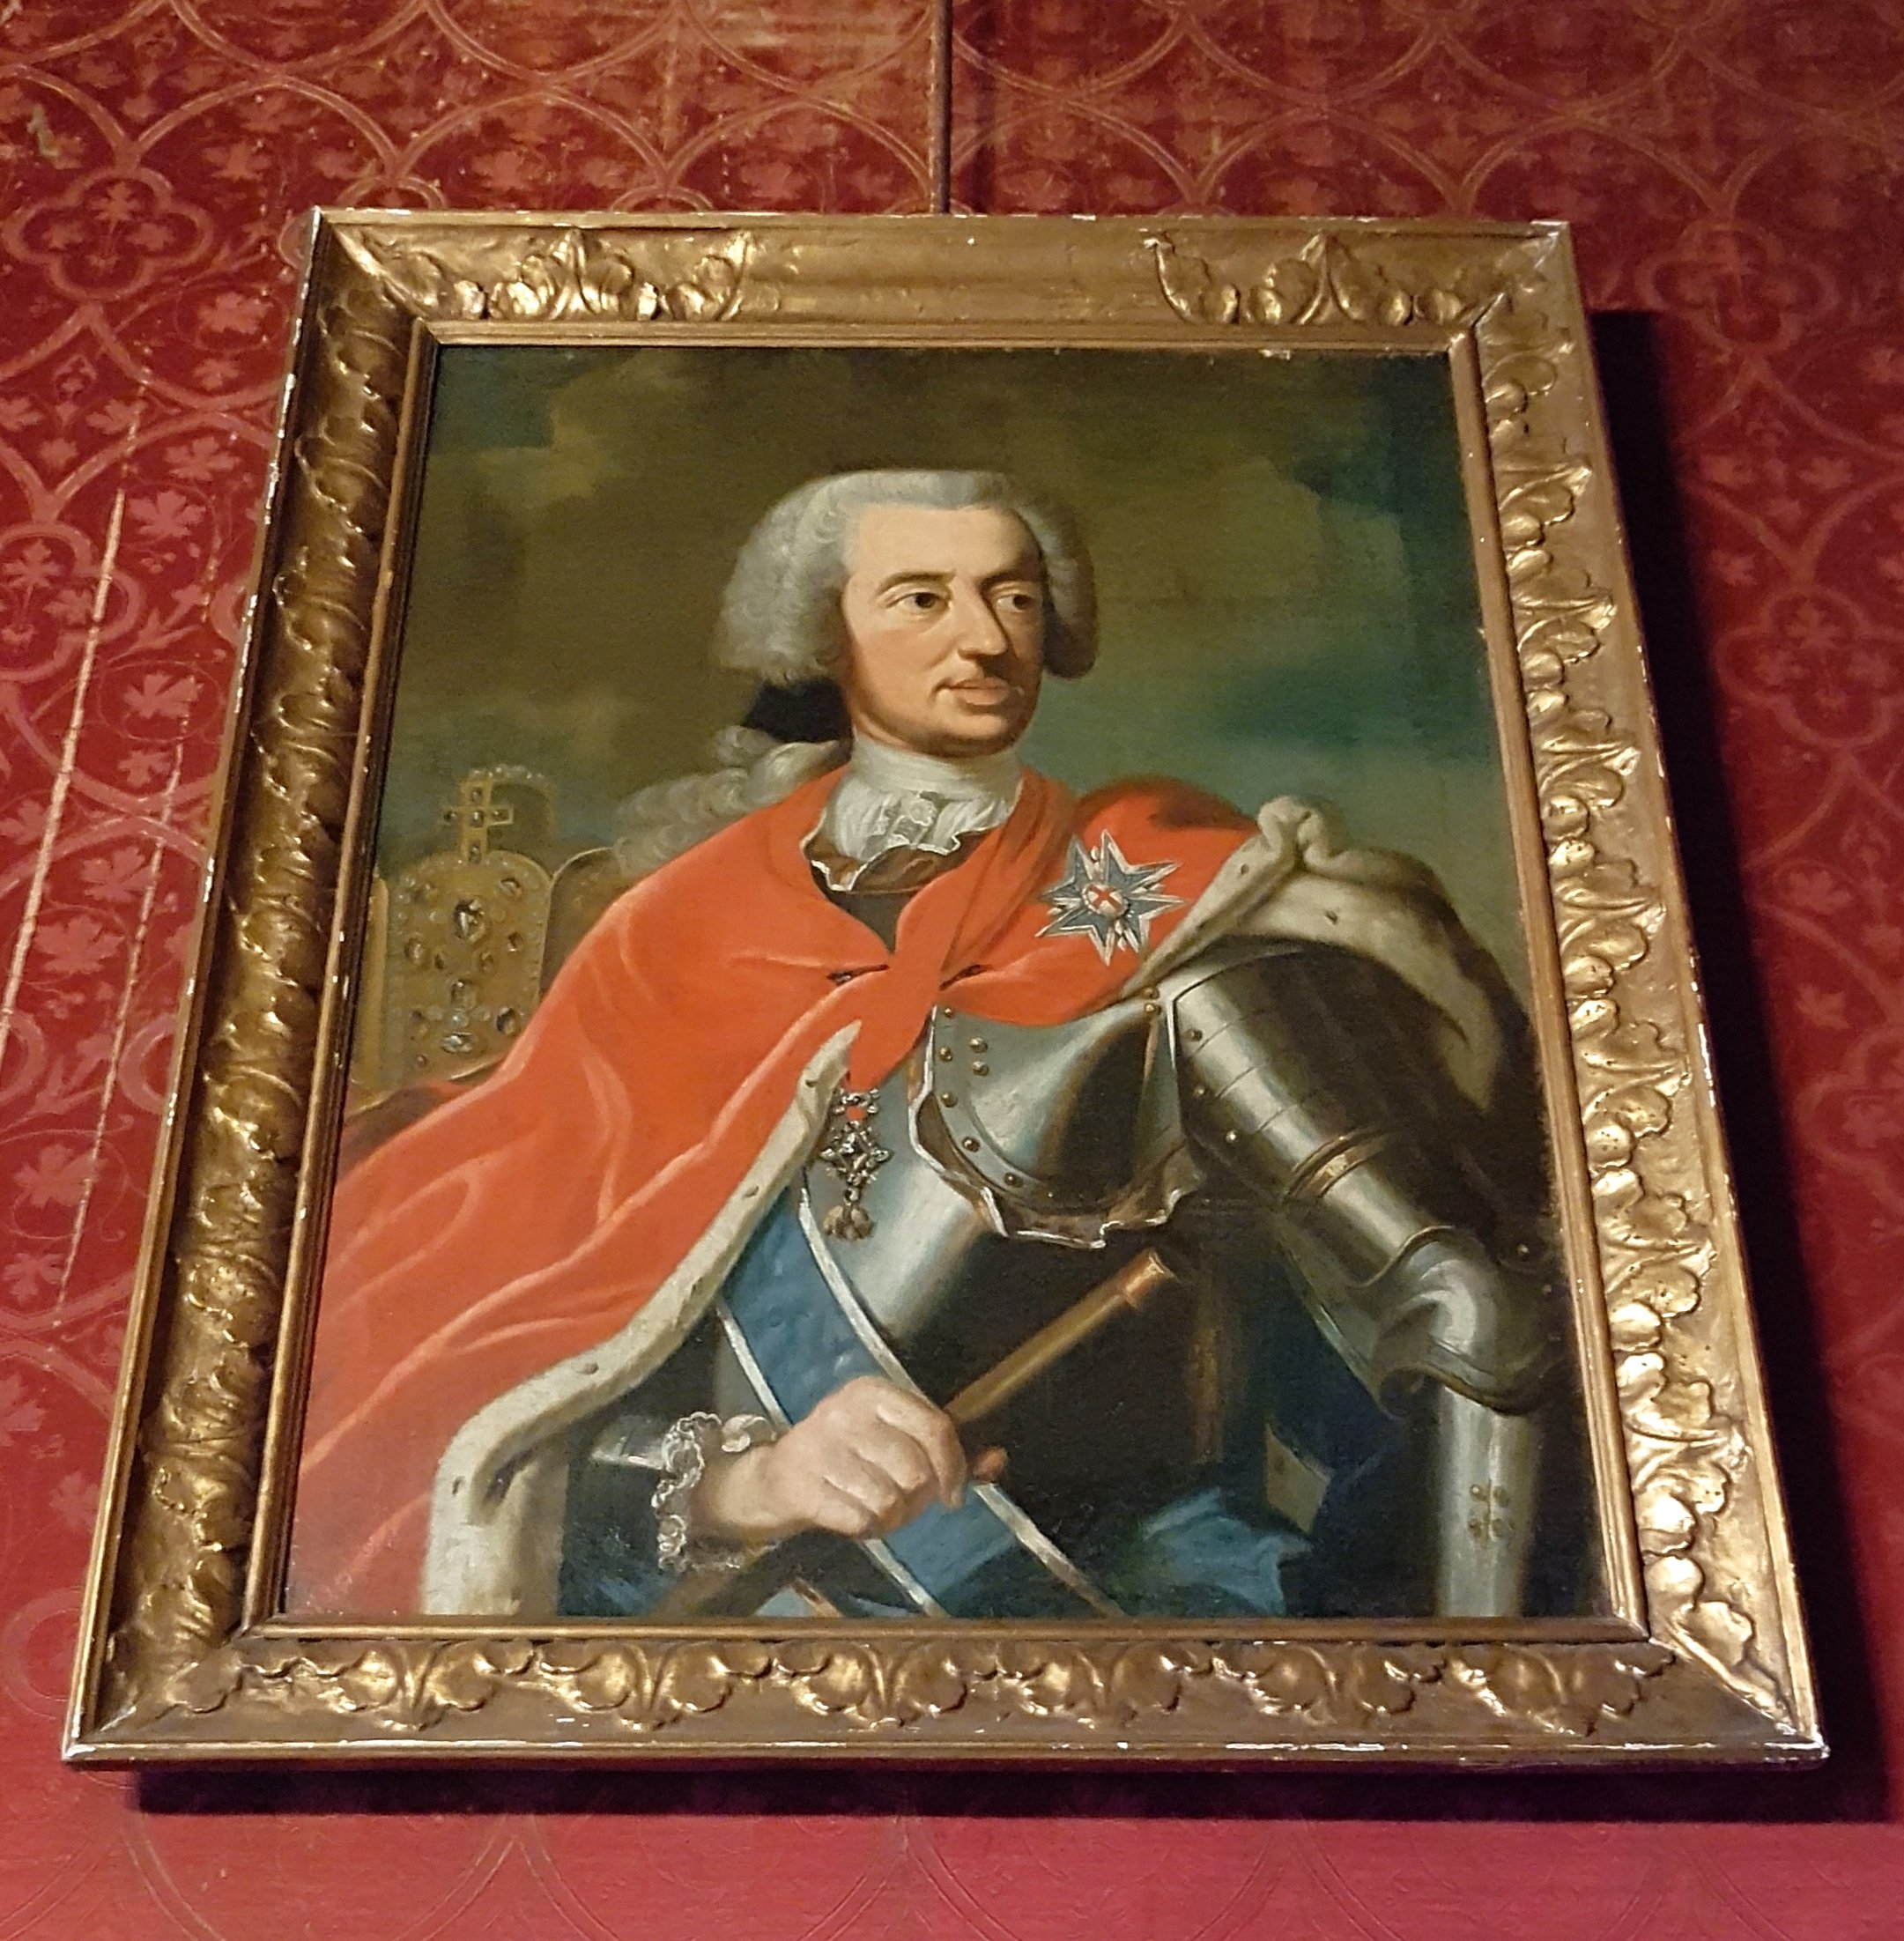 Unbekannt: Porträt Kaiser Karls VII., um 1745 (Schloß Wernigerode GmbH RR-F)